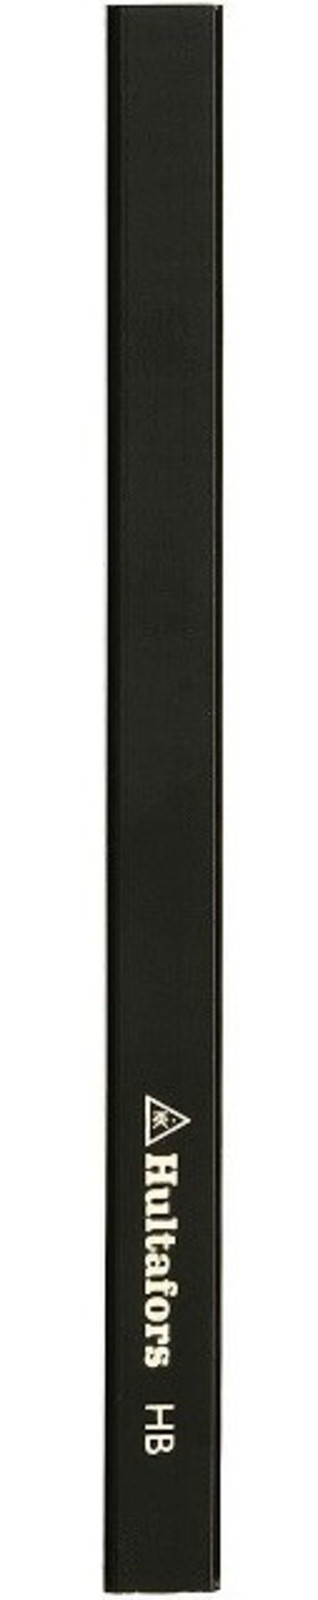 Tesárska ceruzka Hultafors SNP - veľkosť: 180 mm, farba: čierna